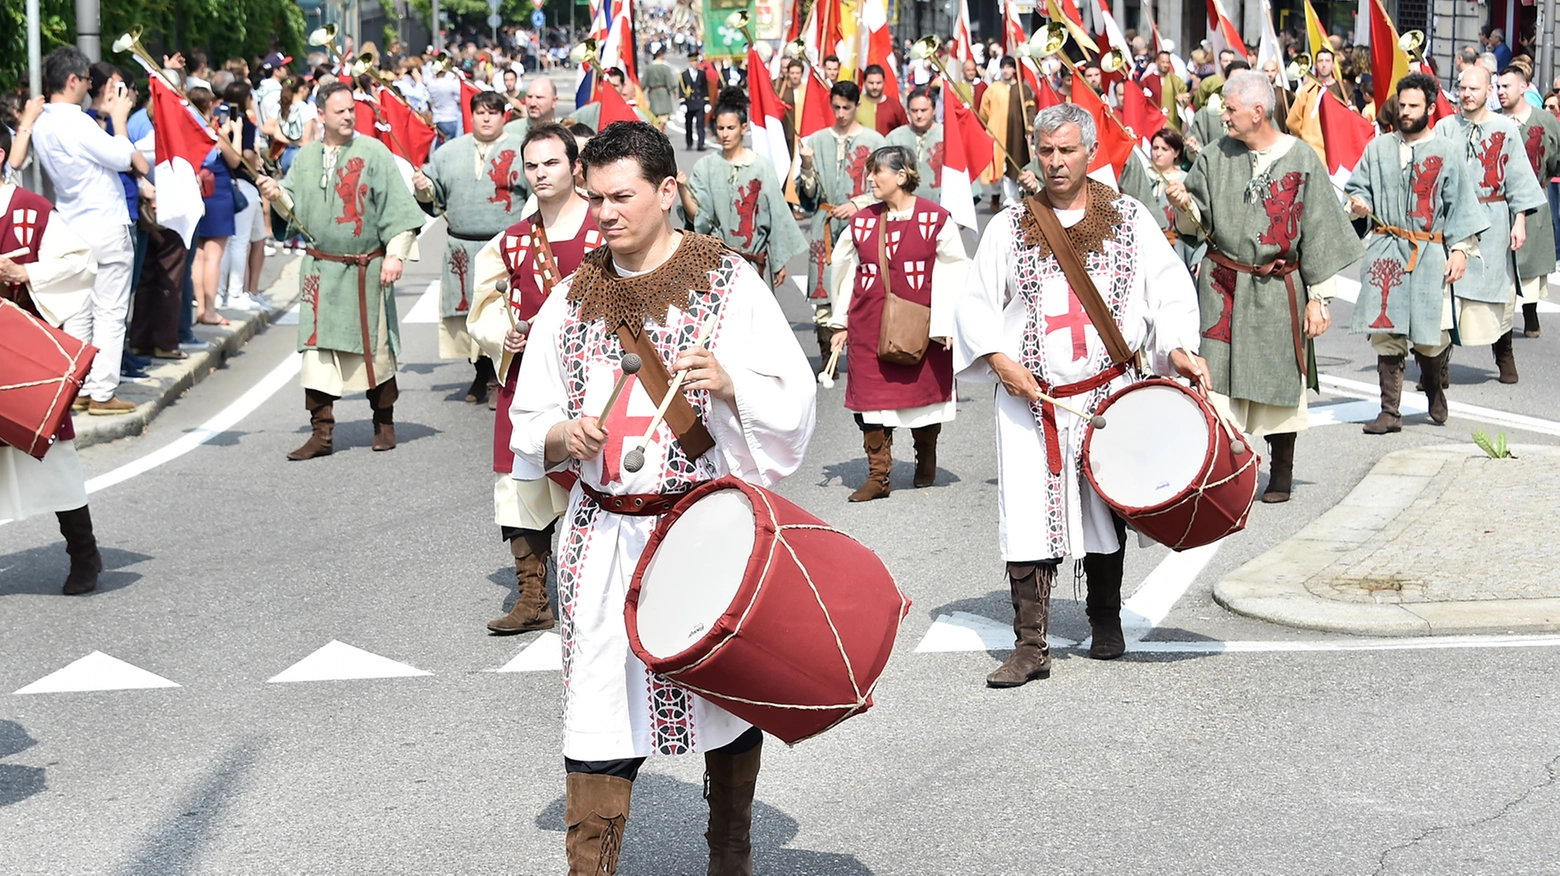 La sfilata storica del Palio di Legnano